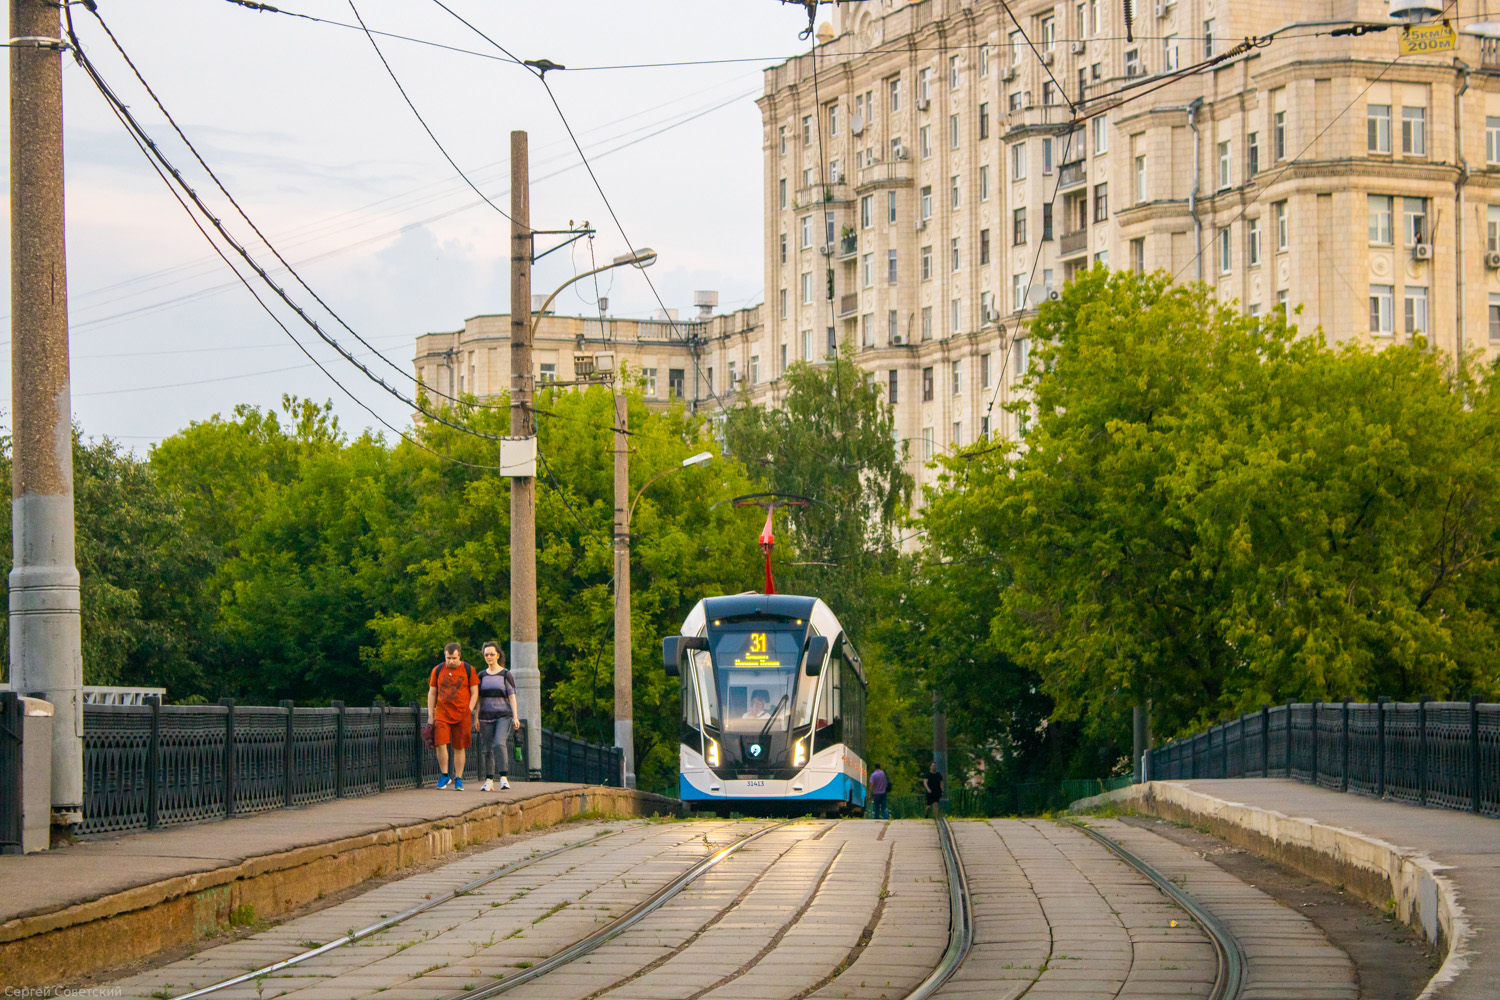 莫斯科 — Tram lines: Northern Administrative District